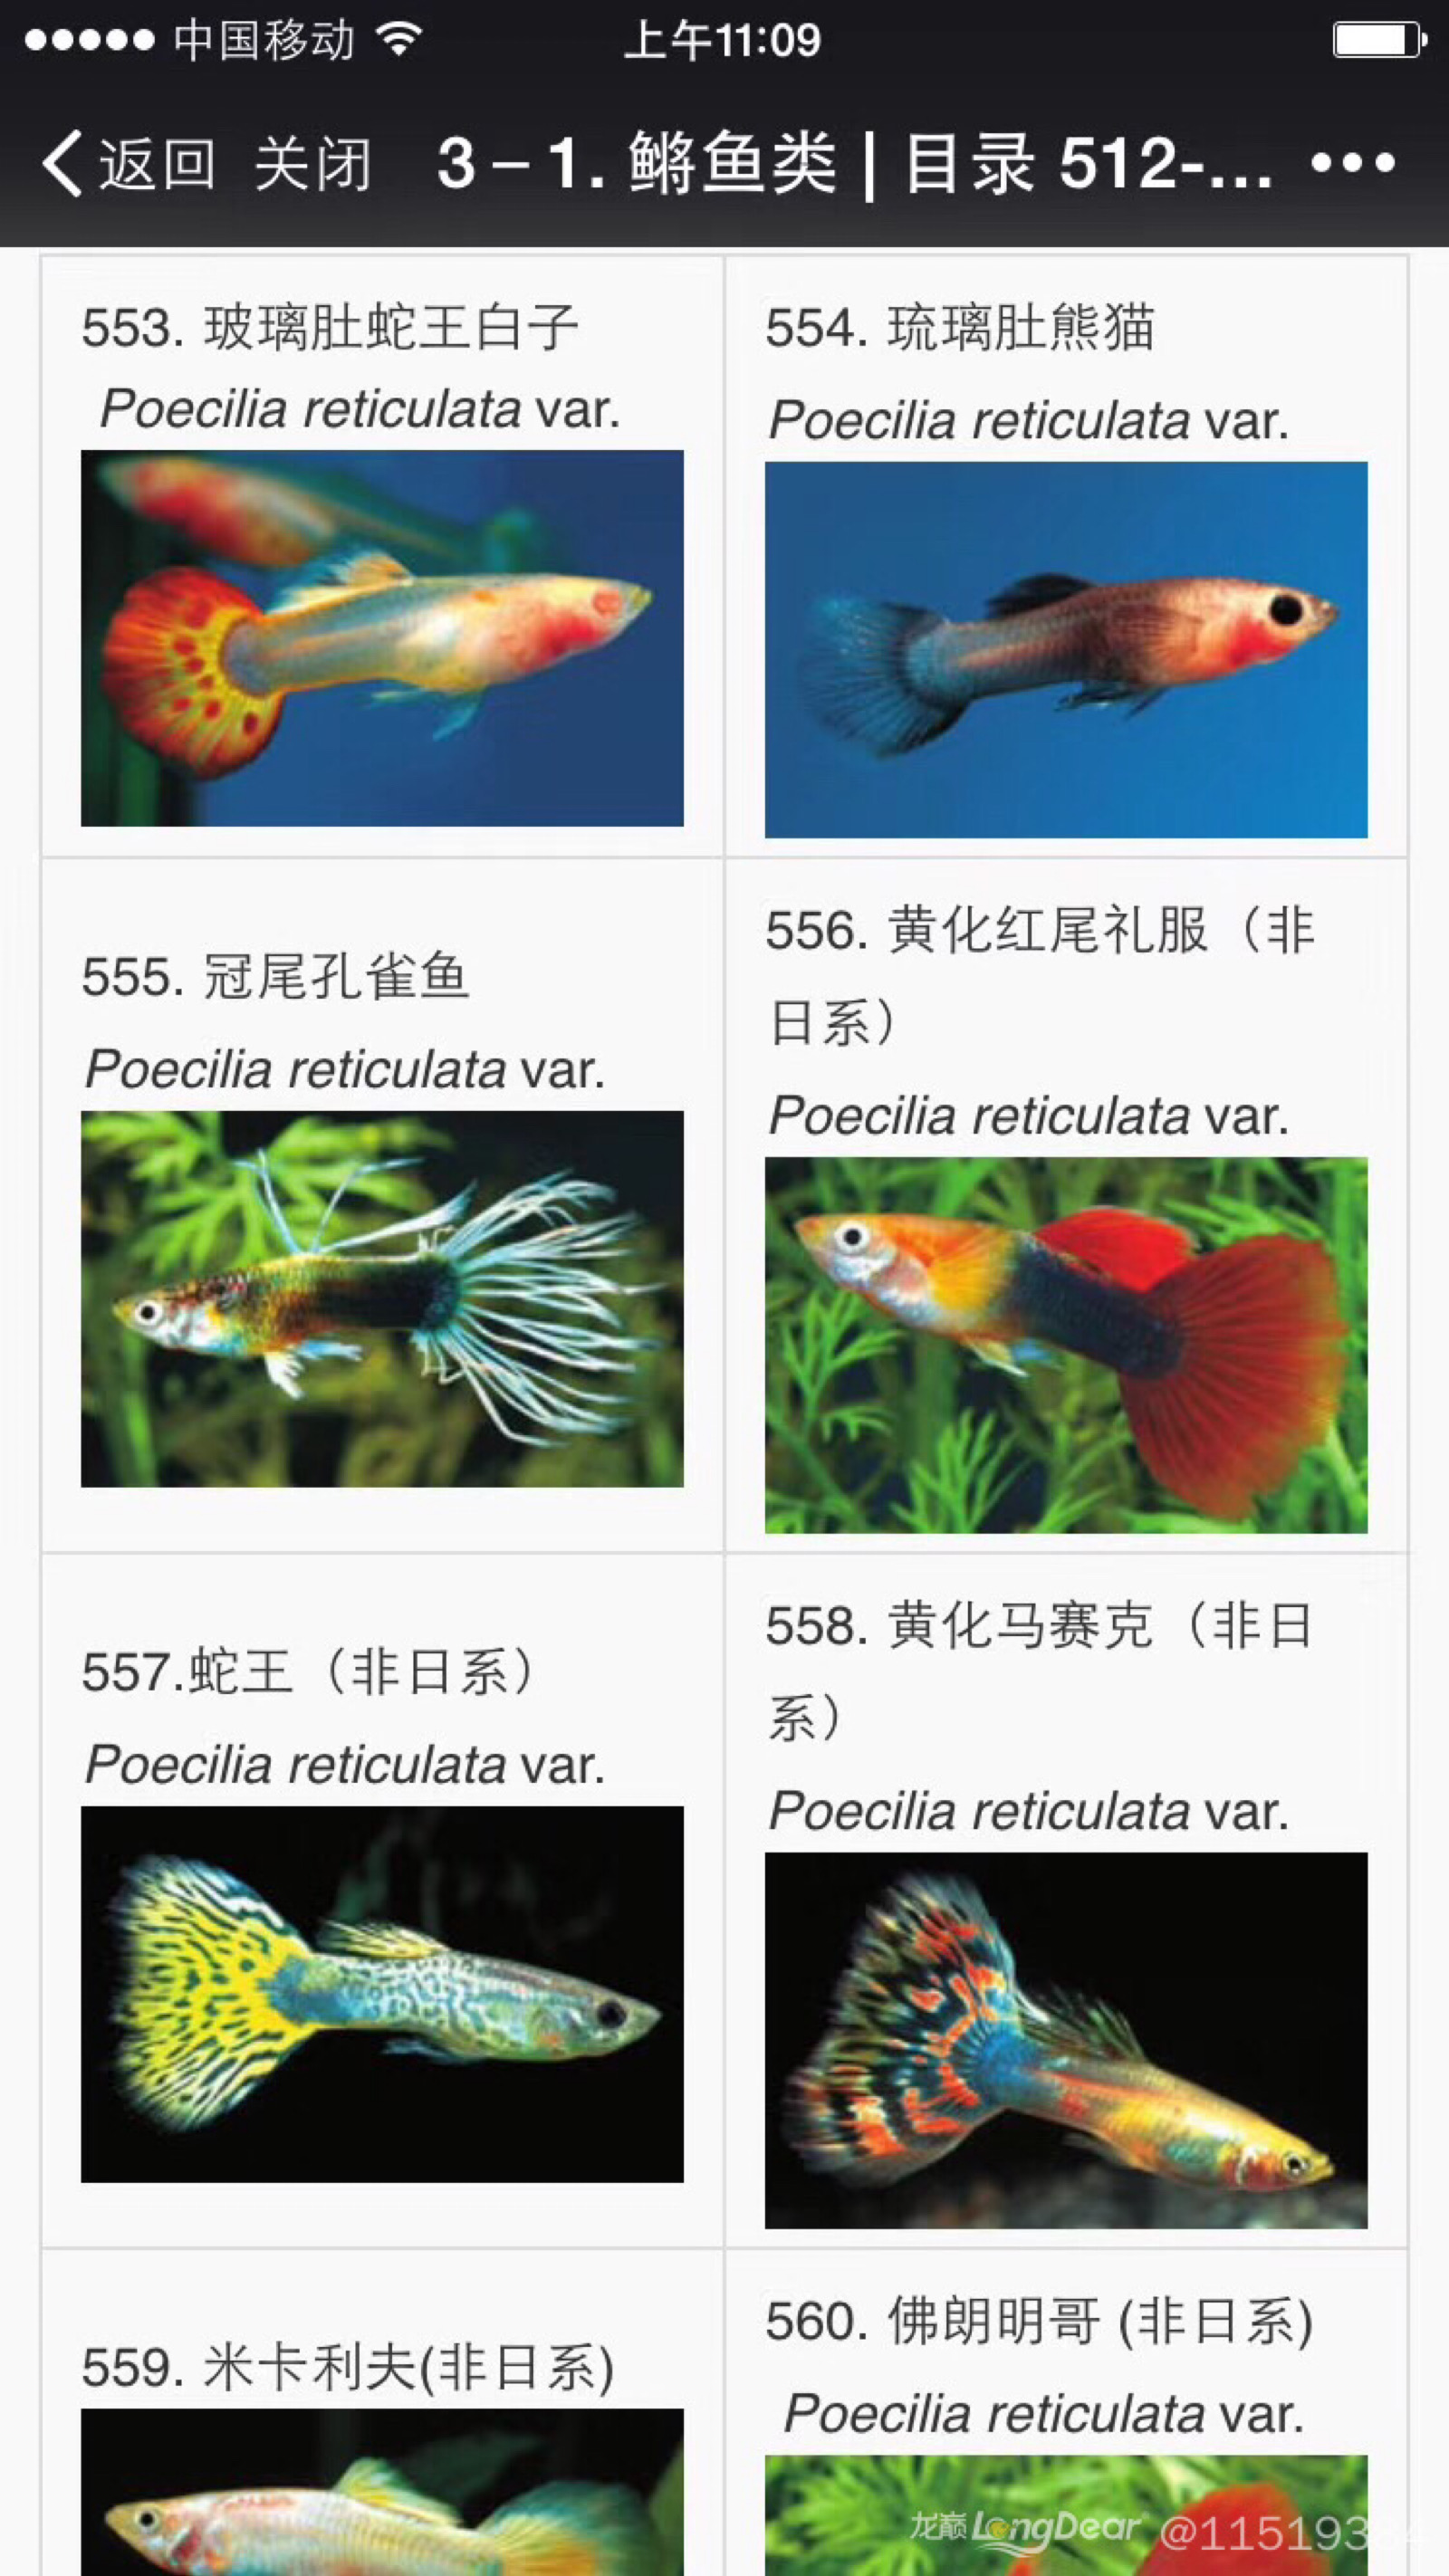 孔雀鱼种类图片带名称图片